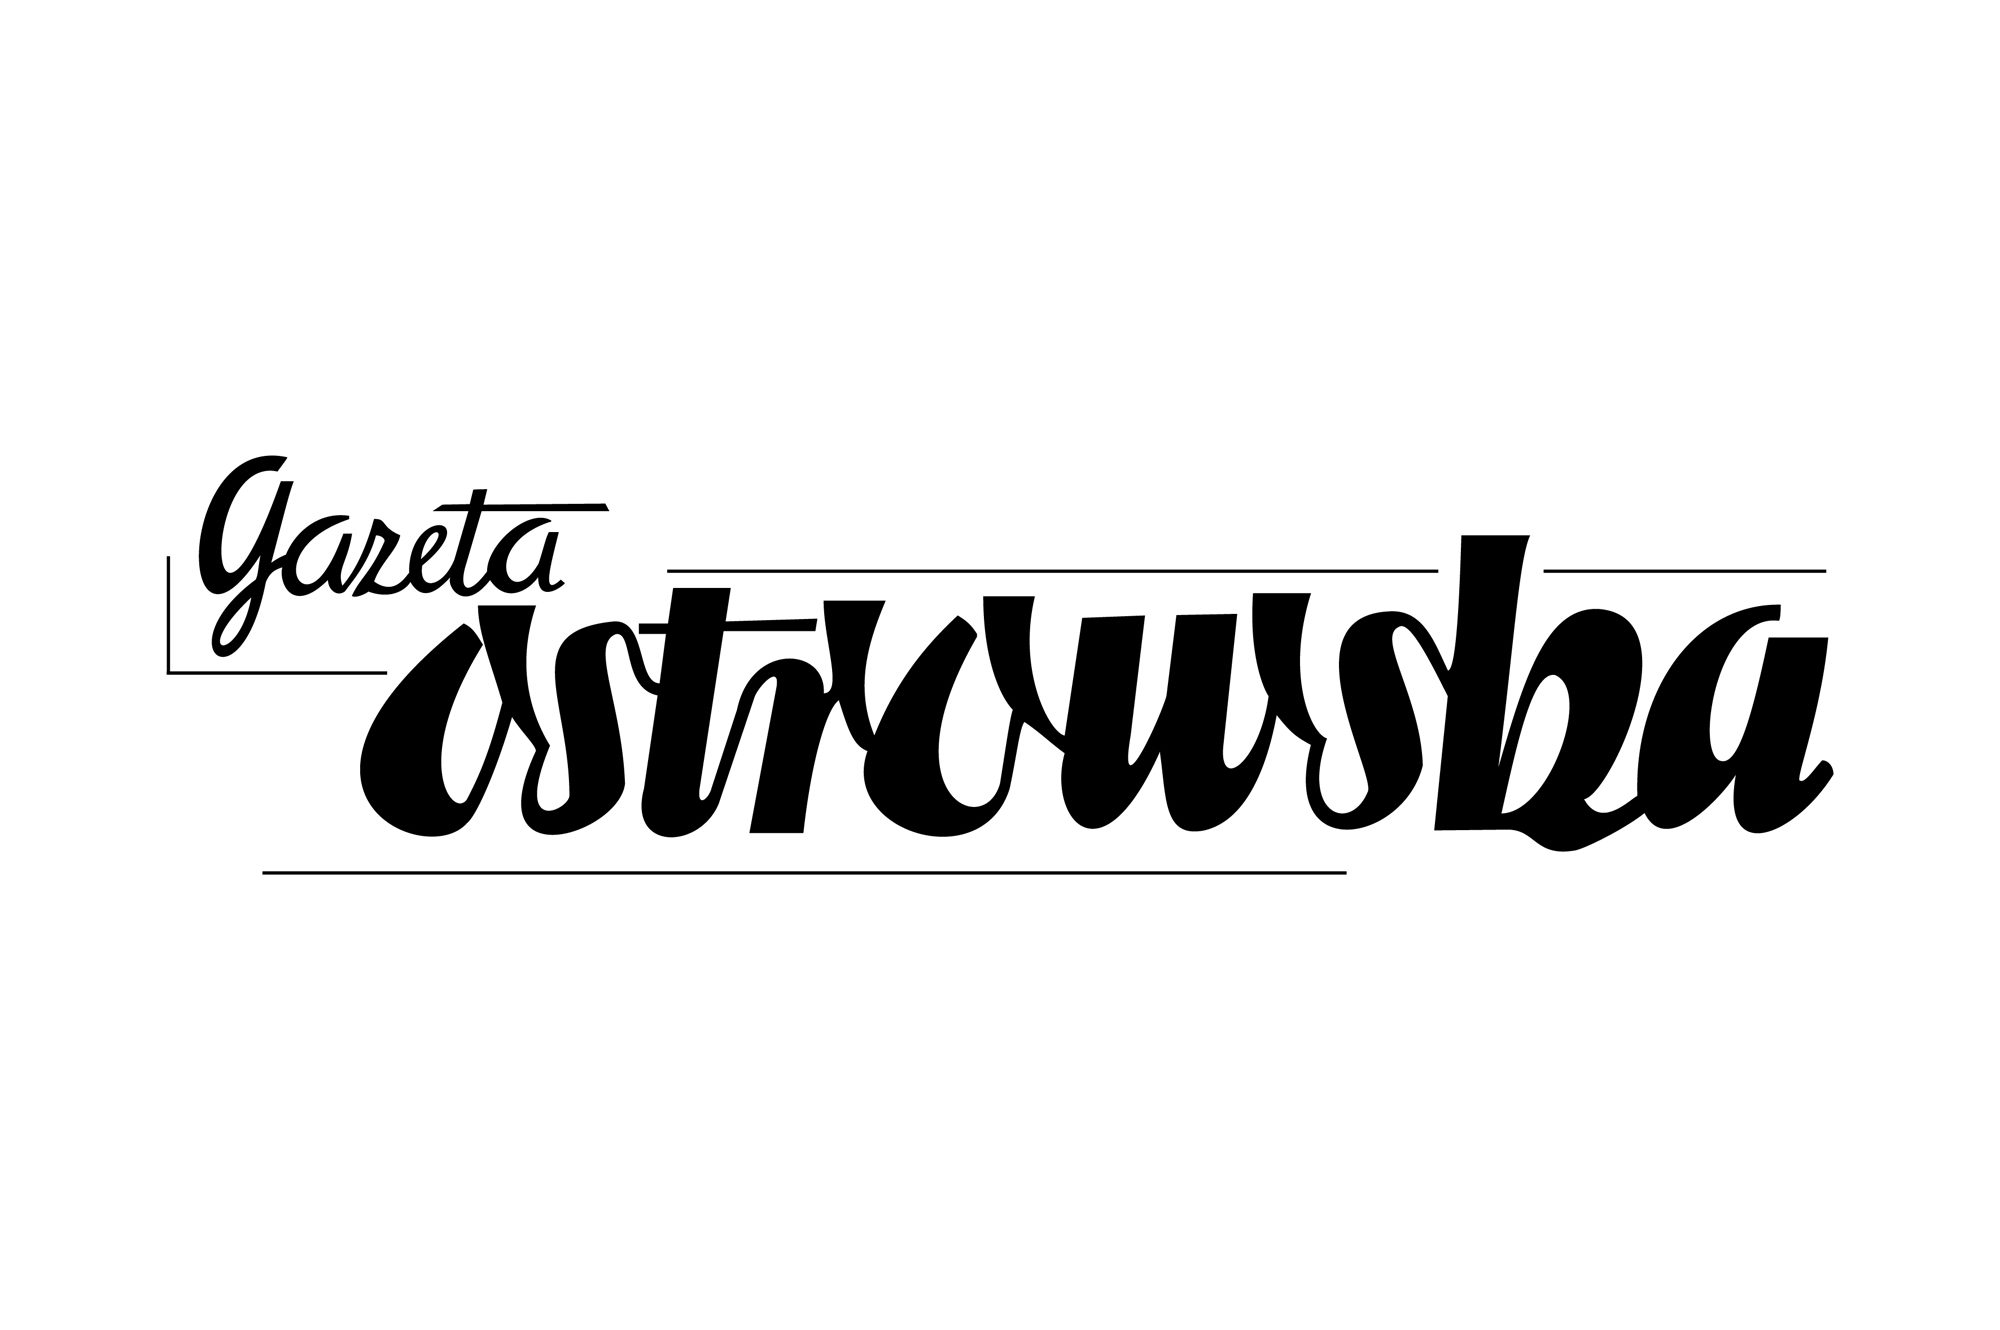 Gazeta Ostrowska 1959-61 - logo PLANSZA 30x30cm EDYCJA